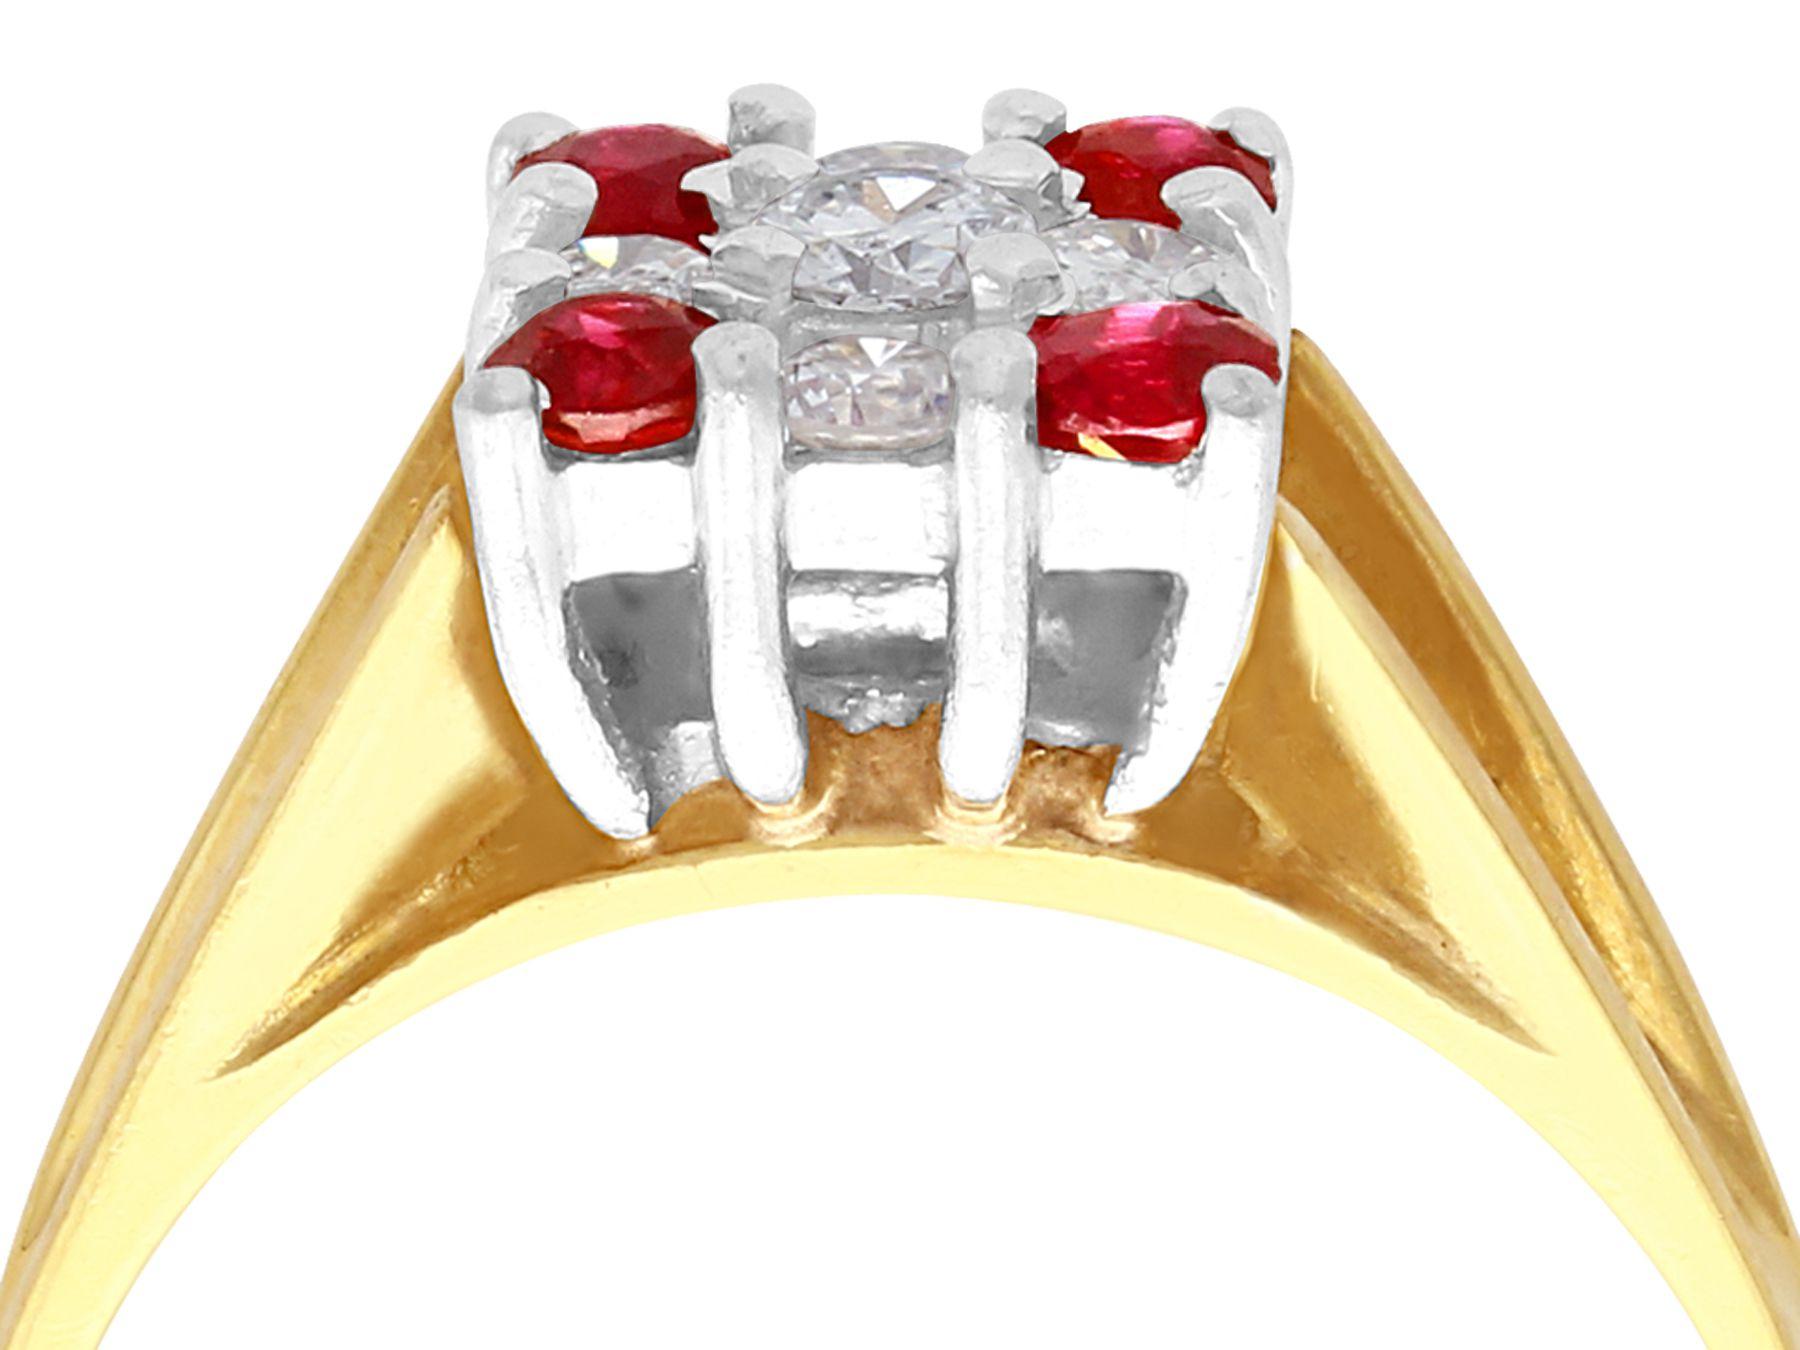 Ein feiner Ring mit einem natürlichen Rubin von 0,24 Karat und einem Diamanten von 0,25 Karat aus 18 Karat Gelbgold und 18 Karat Weißgold; Teil unserer zeitgenössischen Schmuck- und Estate Jewelry-Kollektionen.

Dieser moderne Rubin- und Diamantring